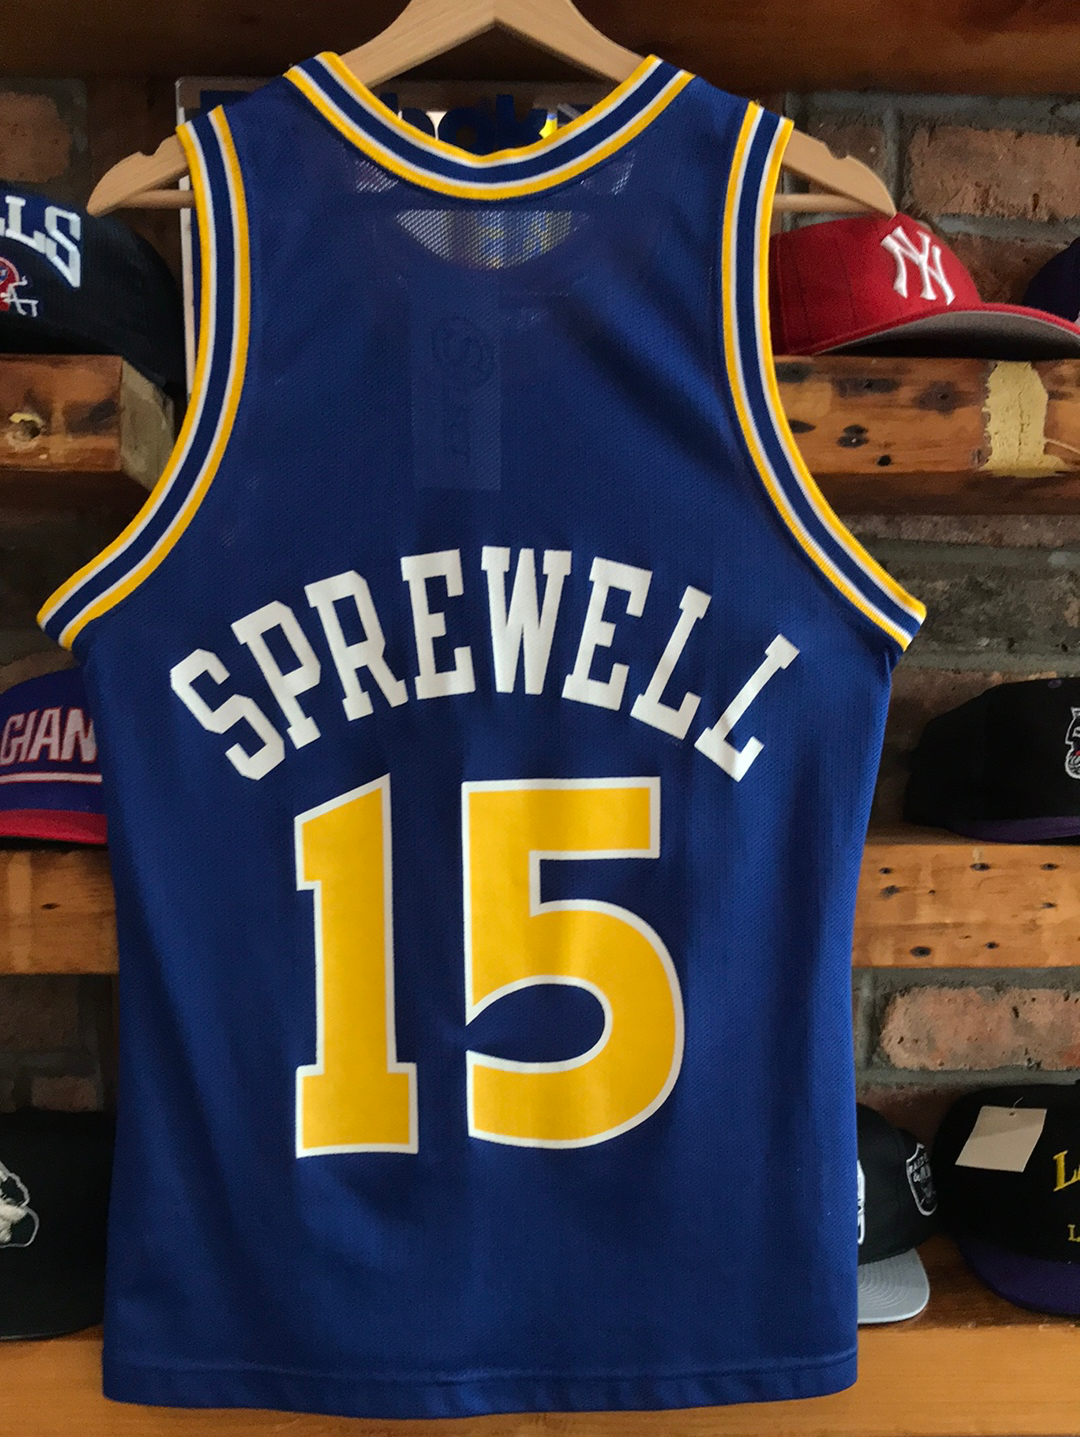 Latrell Sprewell Signed Golden State Warriors Basketball Jersey